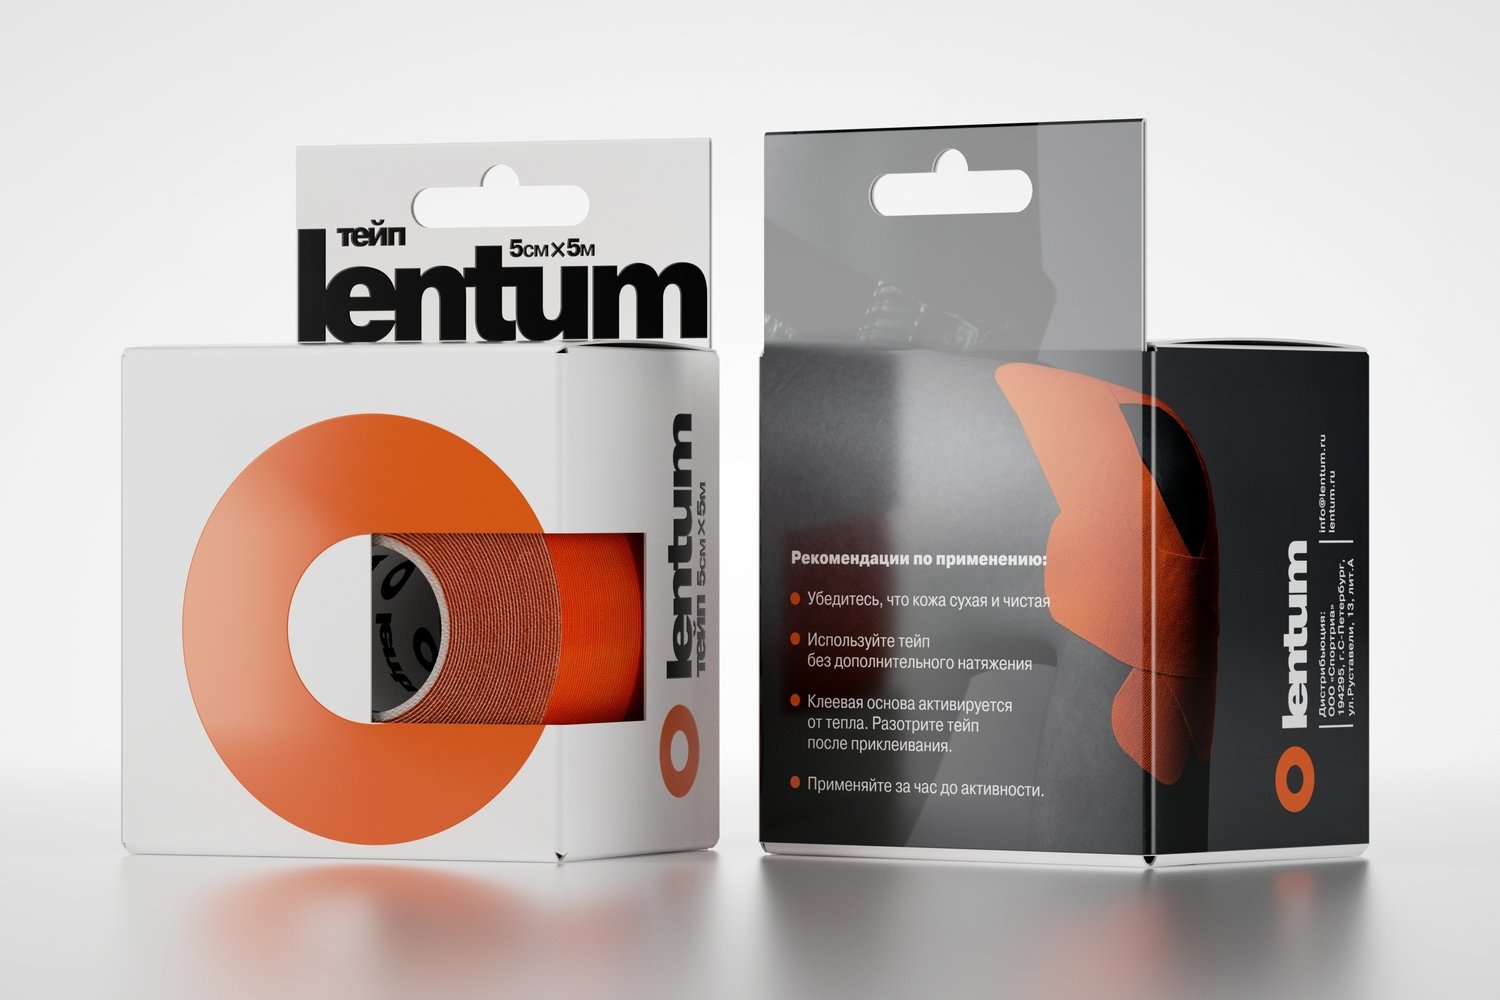 К-тейп Lentum, 5см×5м, оранжевый